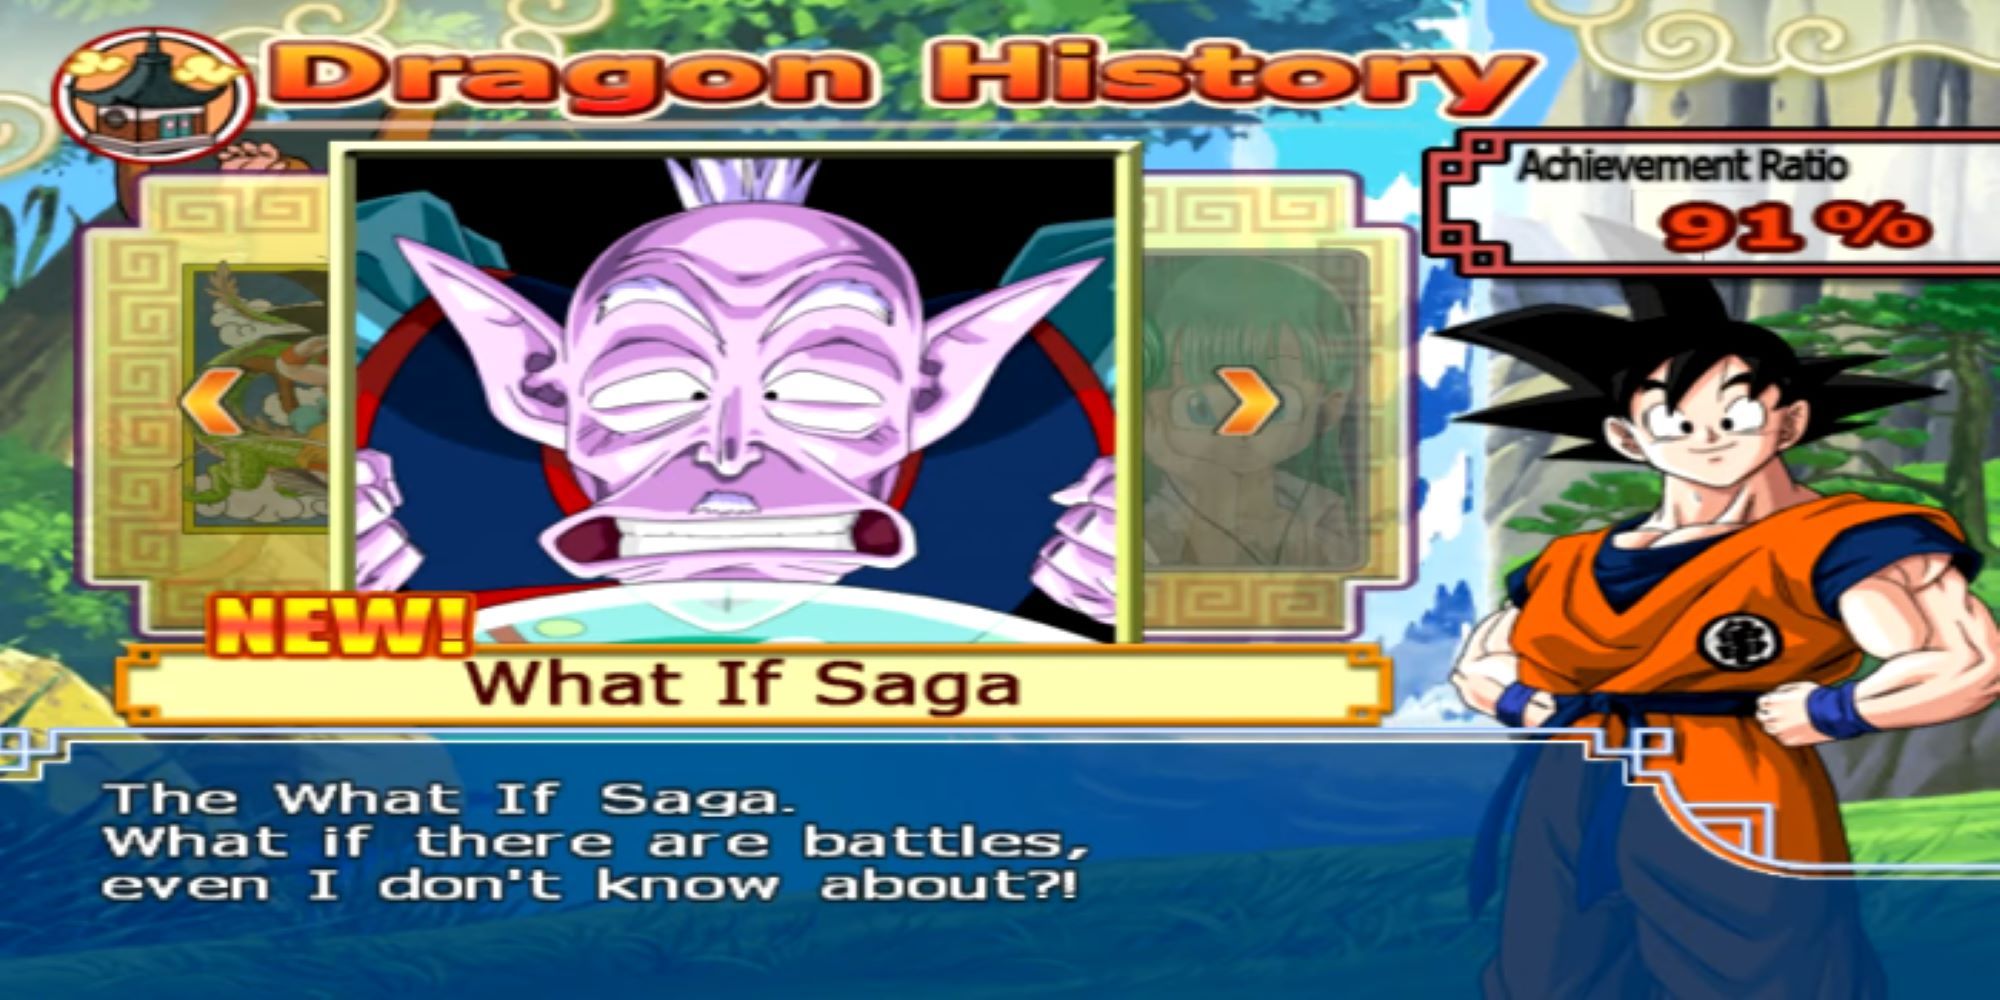 Dragon Ball Z Budokai Tenkaichi 3 The What If Saga Story Mode